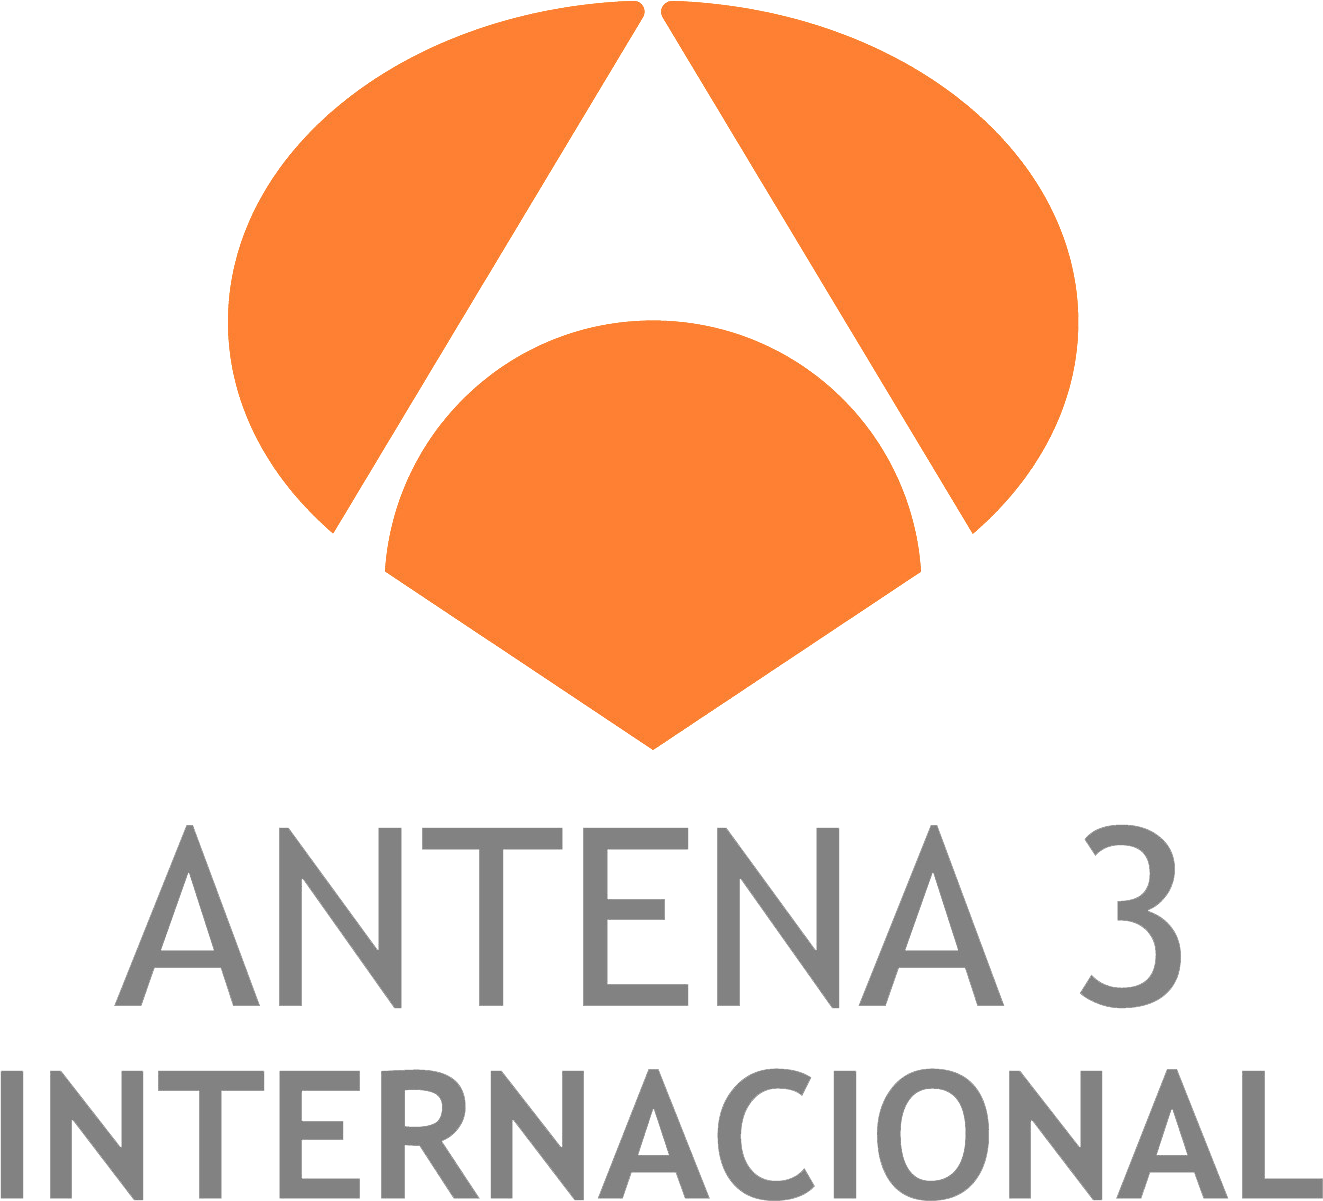 Quiénes somos, Antena 3 Internacional